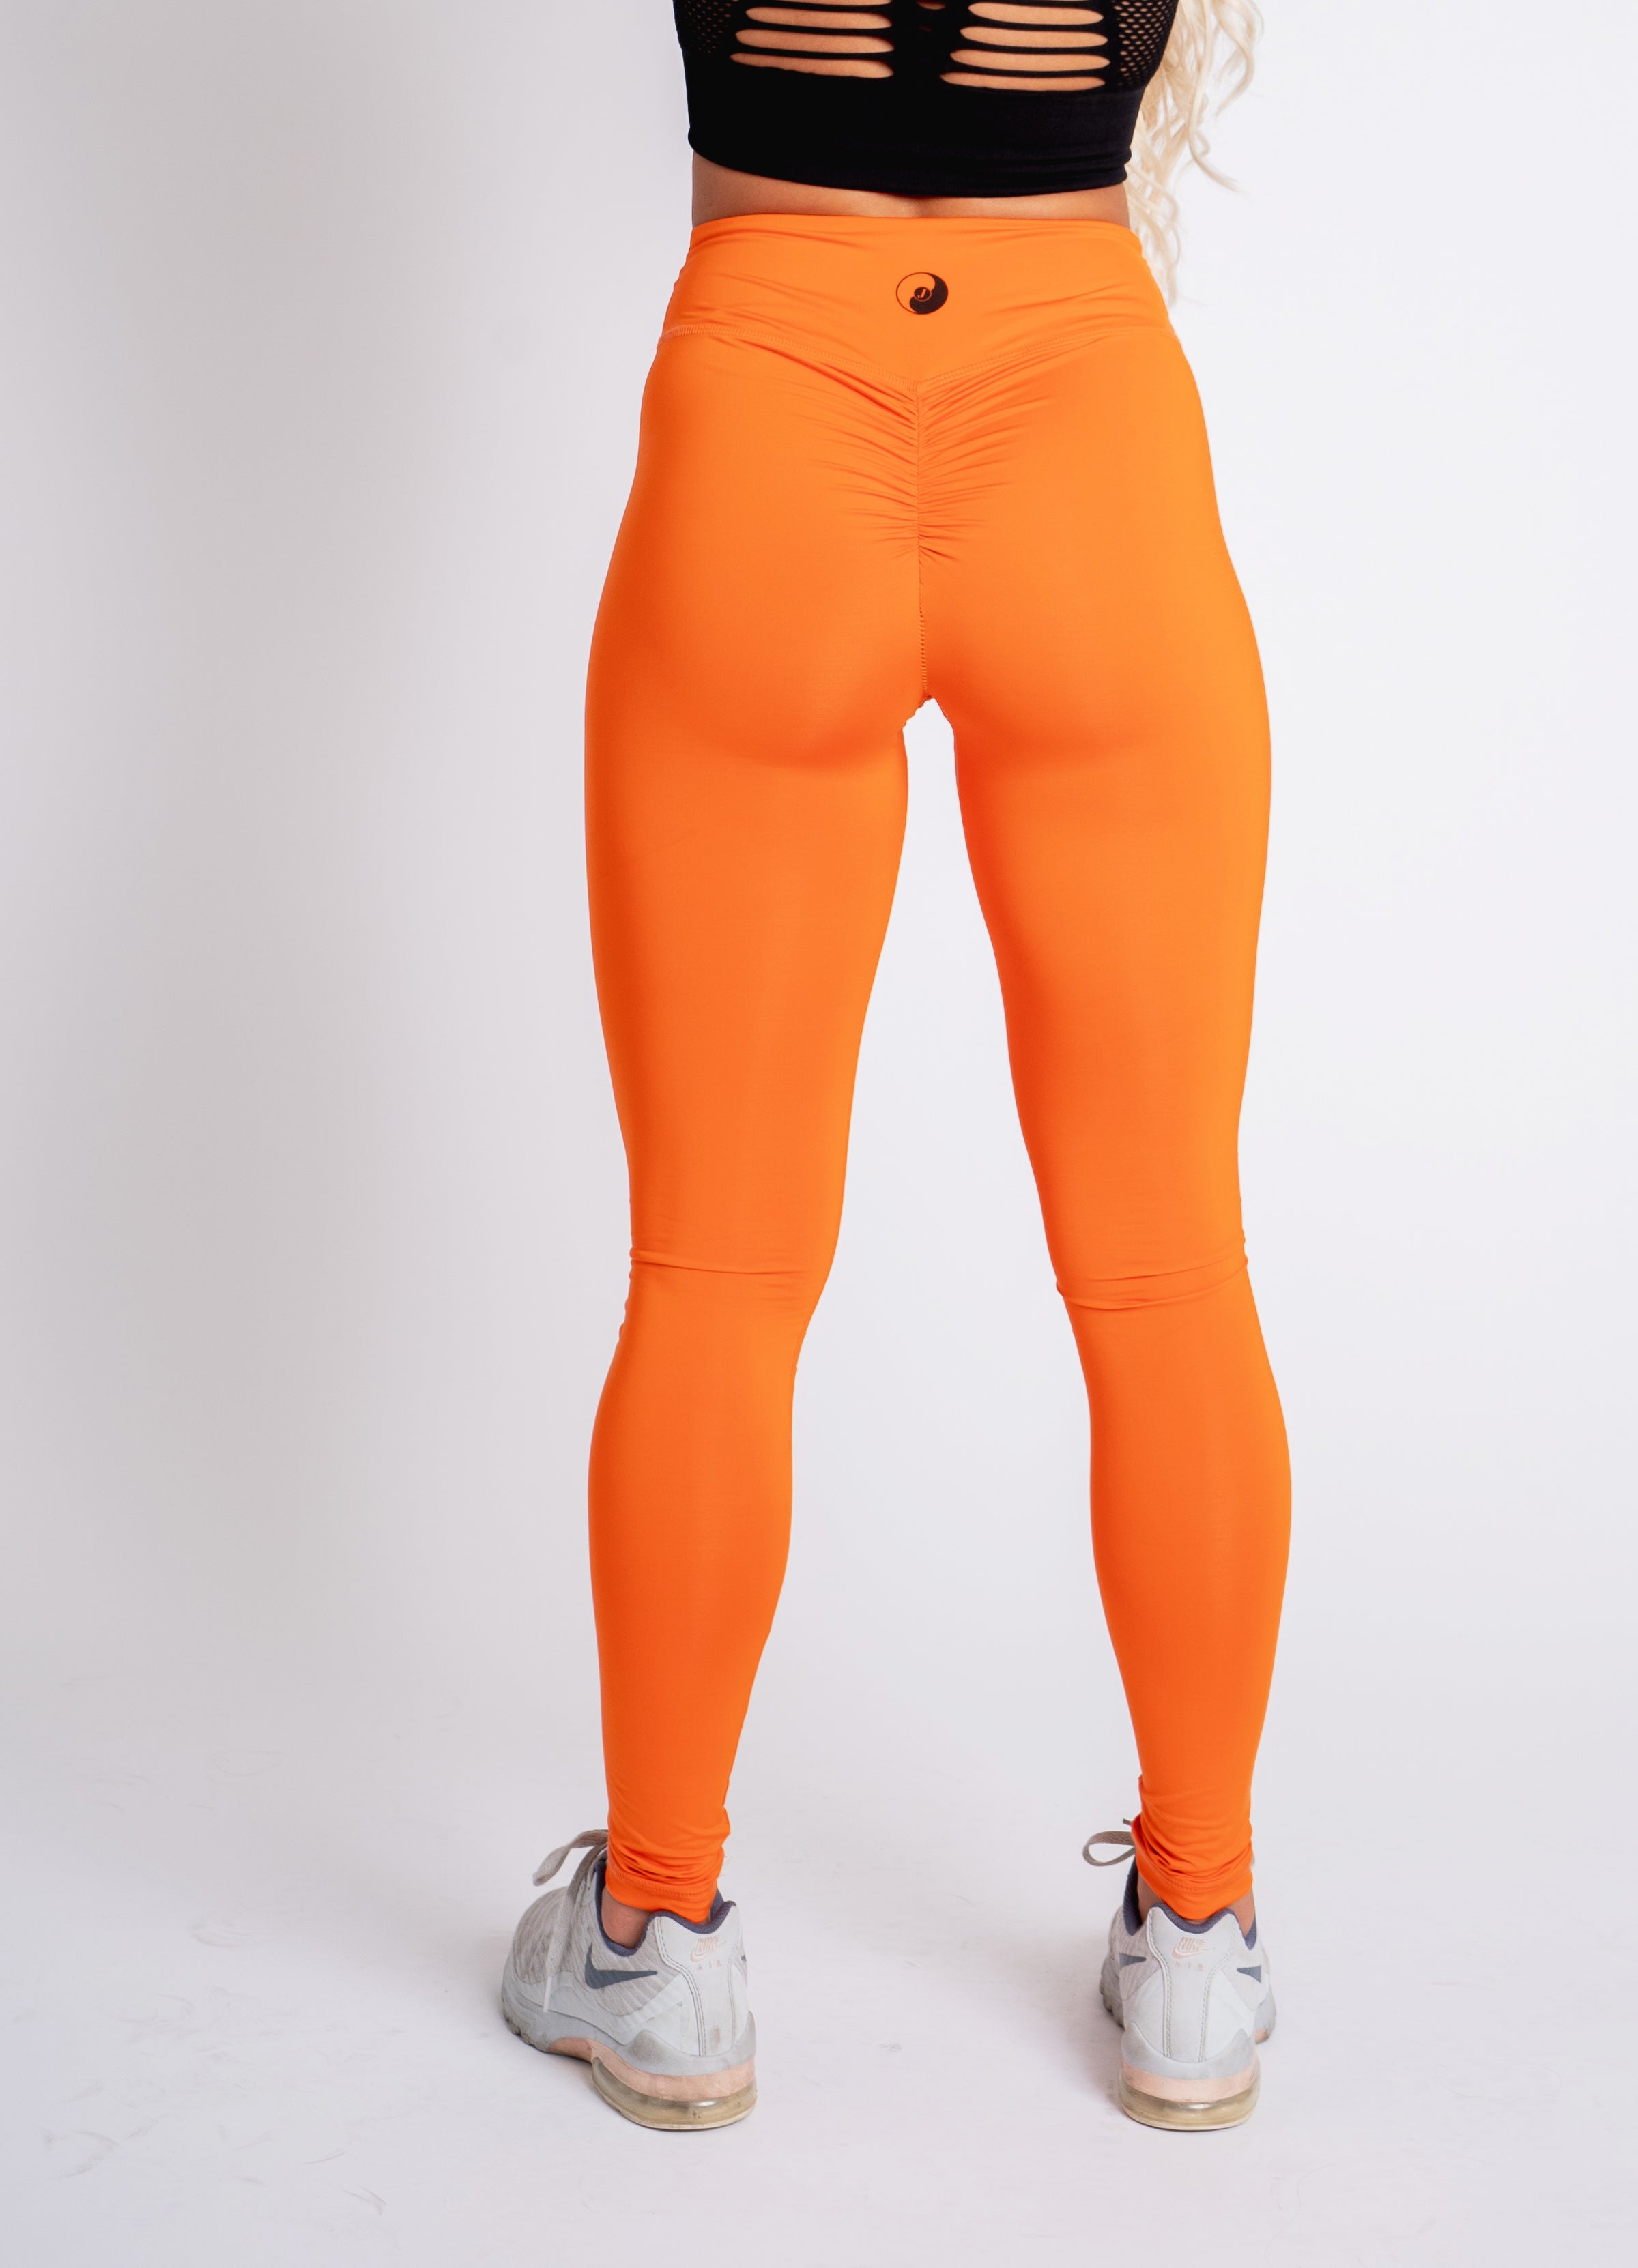 tangerine leggings